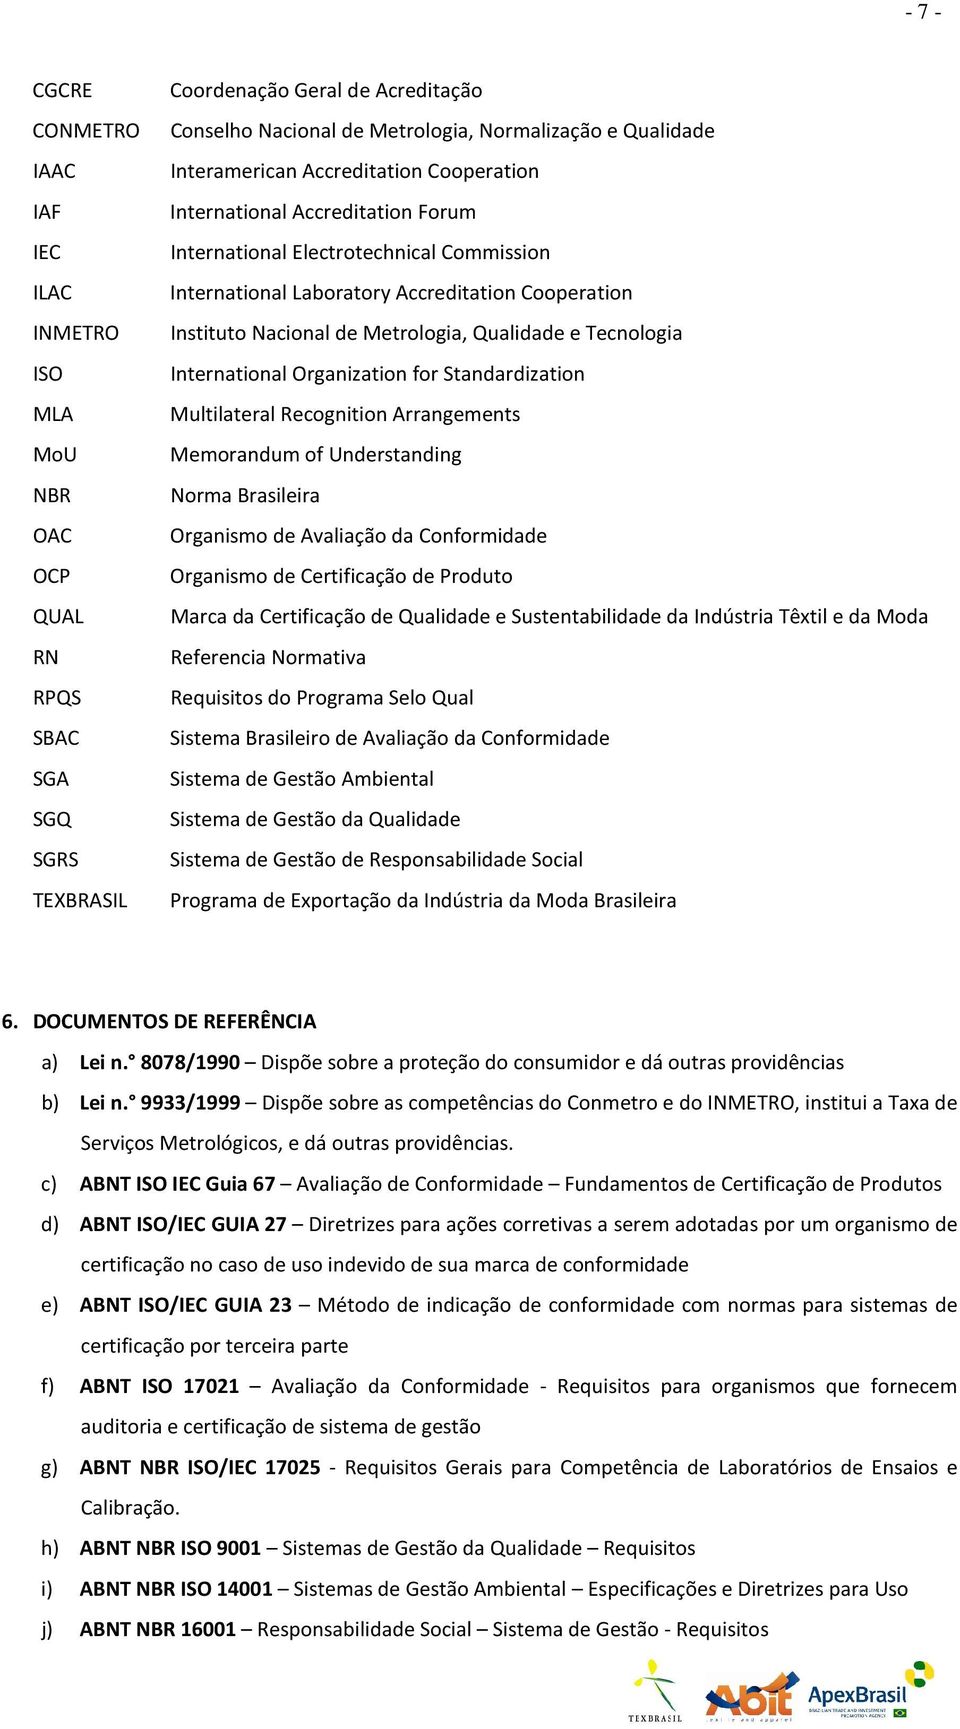 Standardization MLA Multilateral Recognition Arrangements MoU Memorandum of Understanding NBR Norma Brasileira OAC Organismo de Avaliação da Conformidade OCP Organismo de Certificação de Produto QUAL